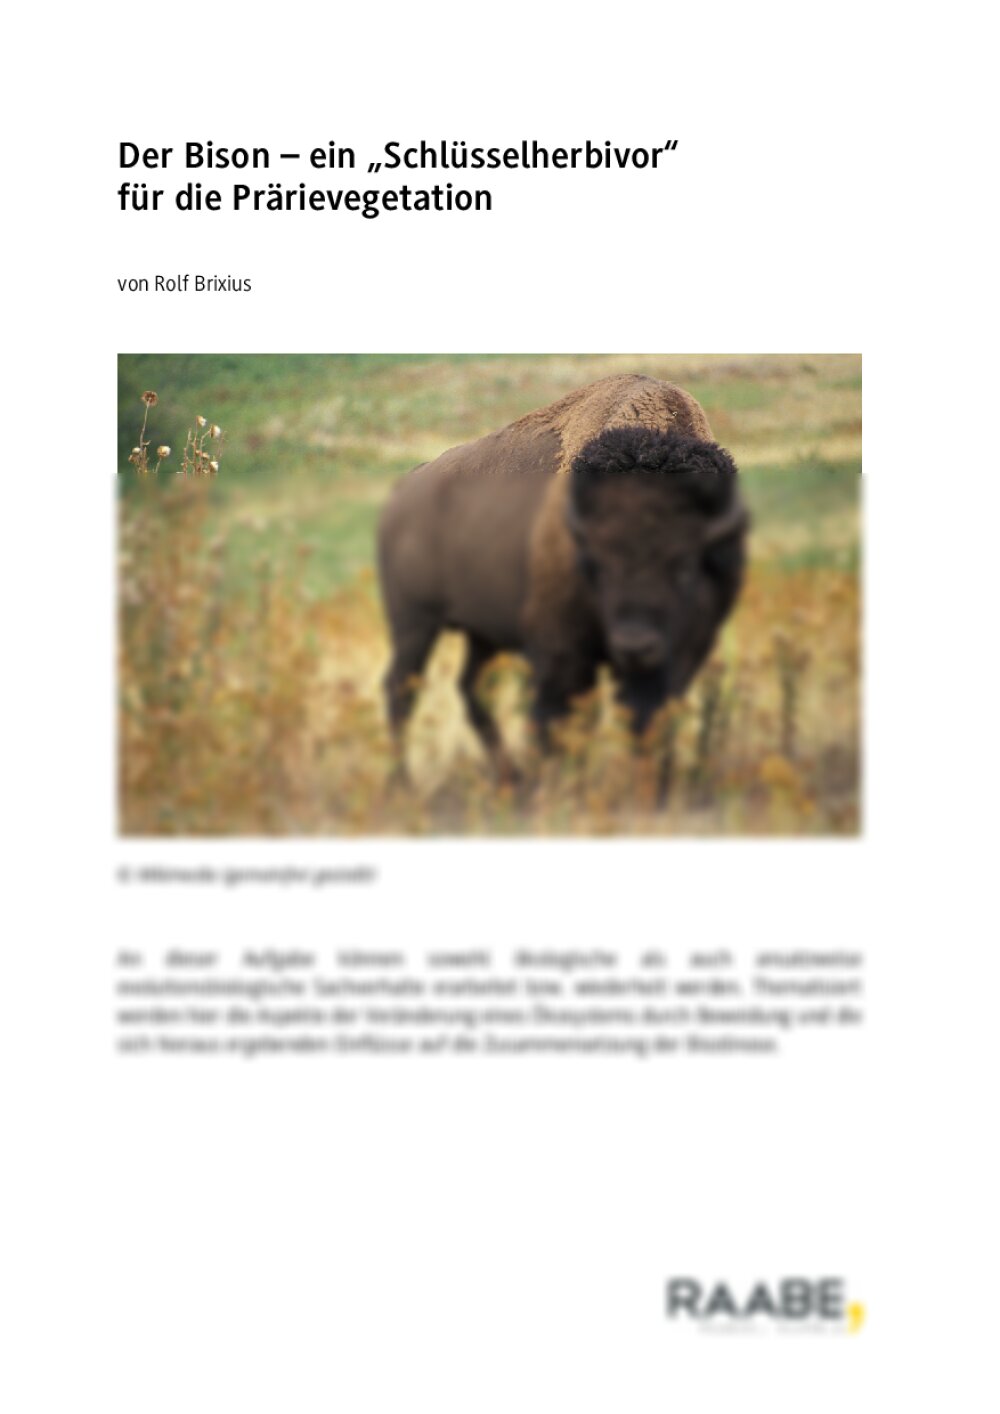 Der Bison – ein "Schlüsselherbivor" für die Prärievegetation - Seite 1